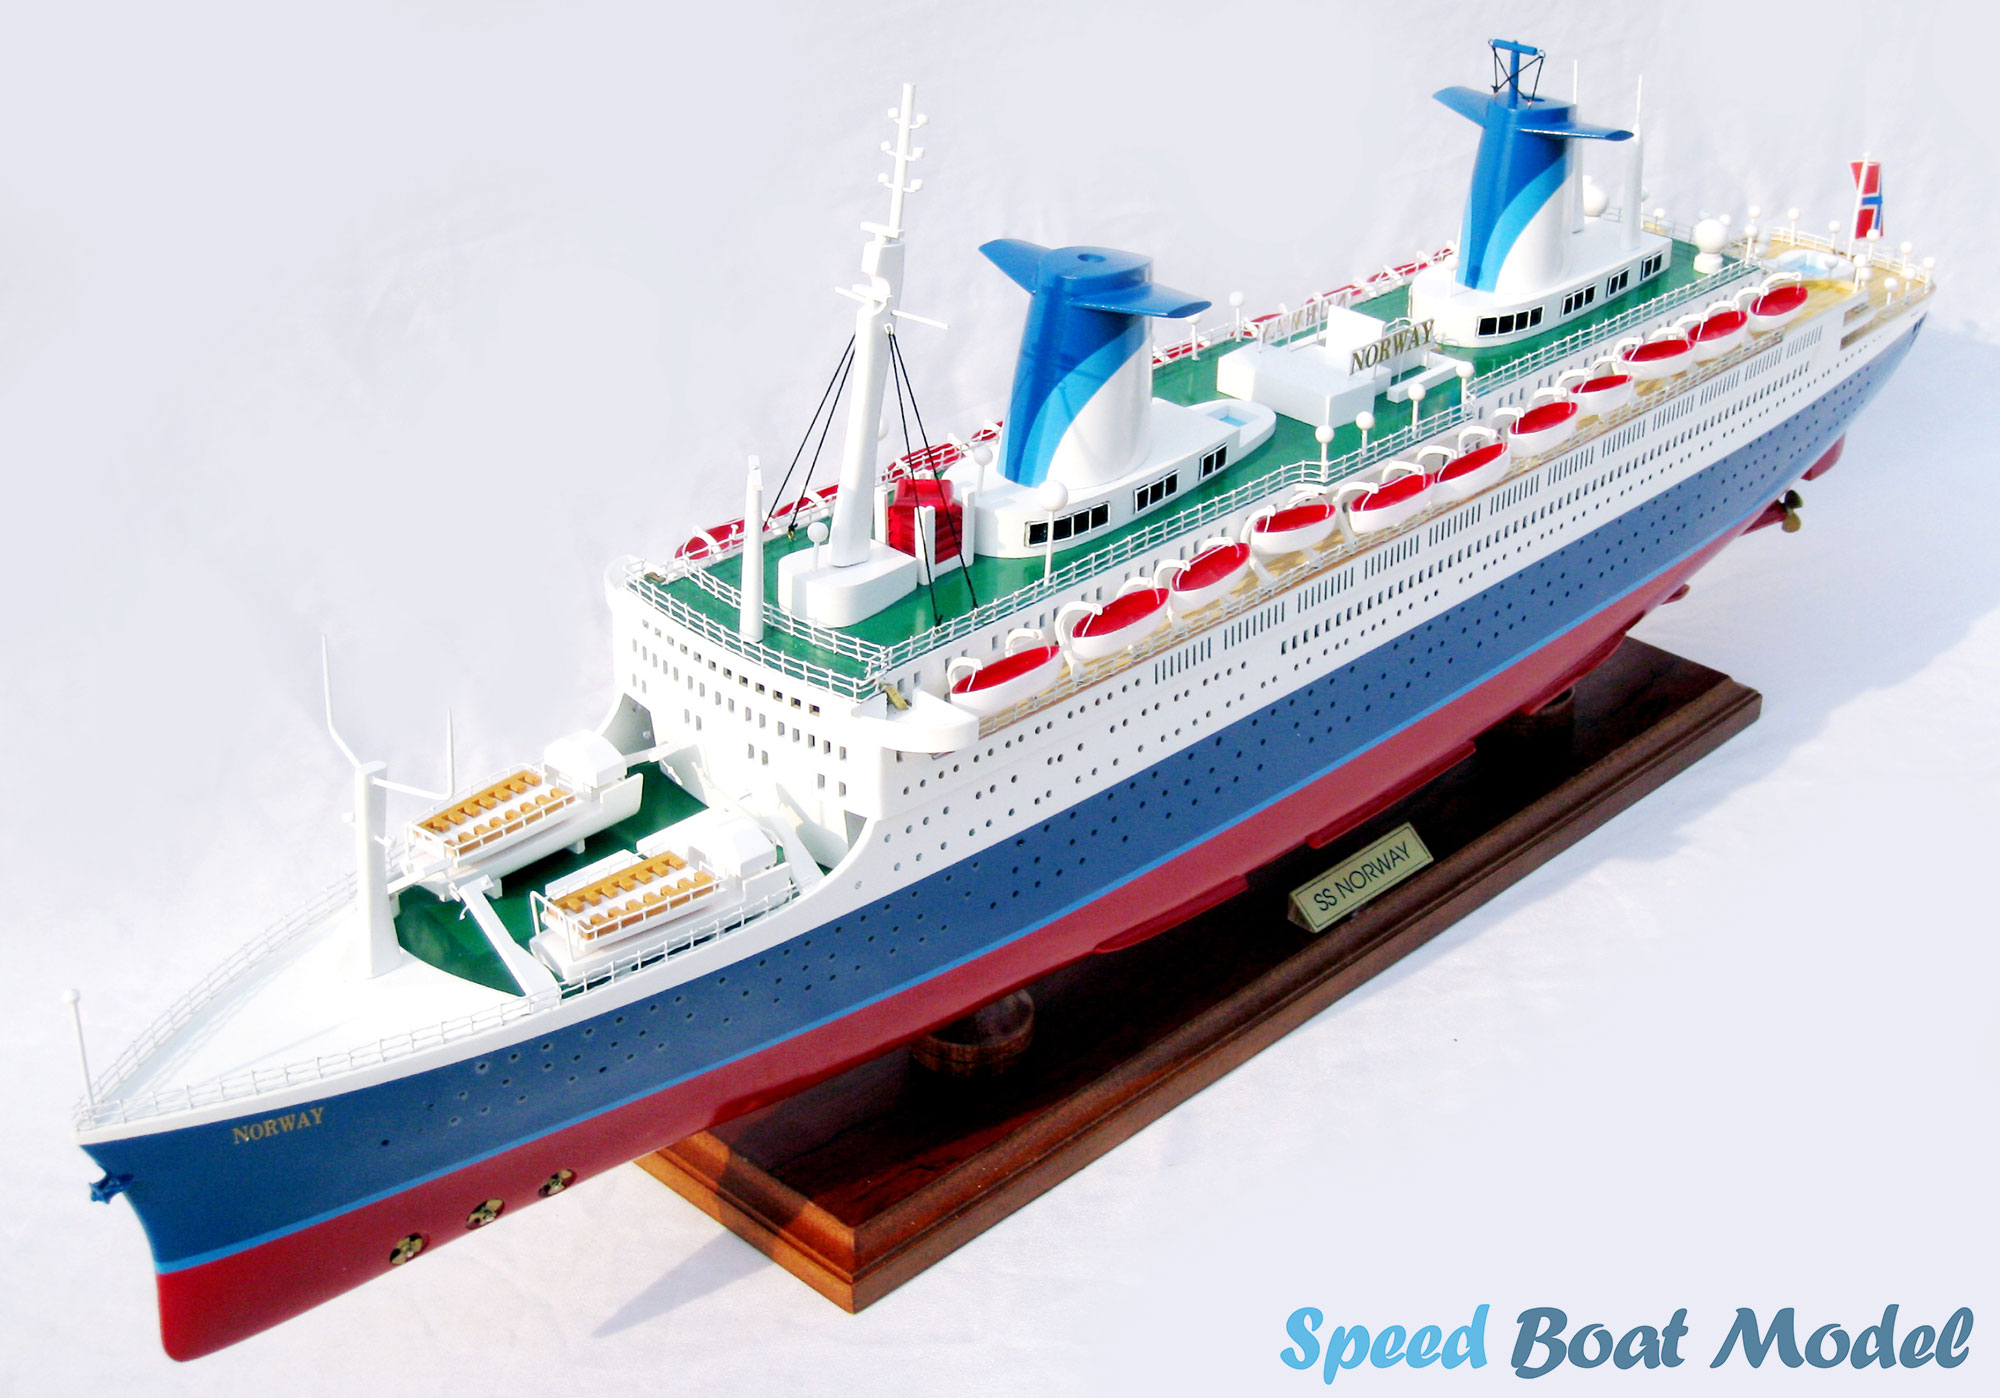 Ss Norway Ocean Liner Model 31.4"